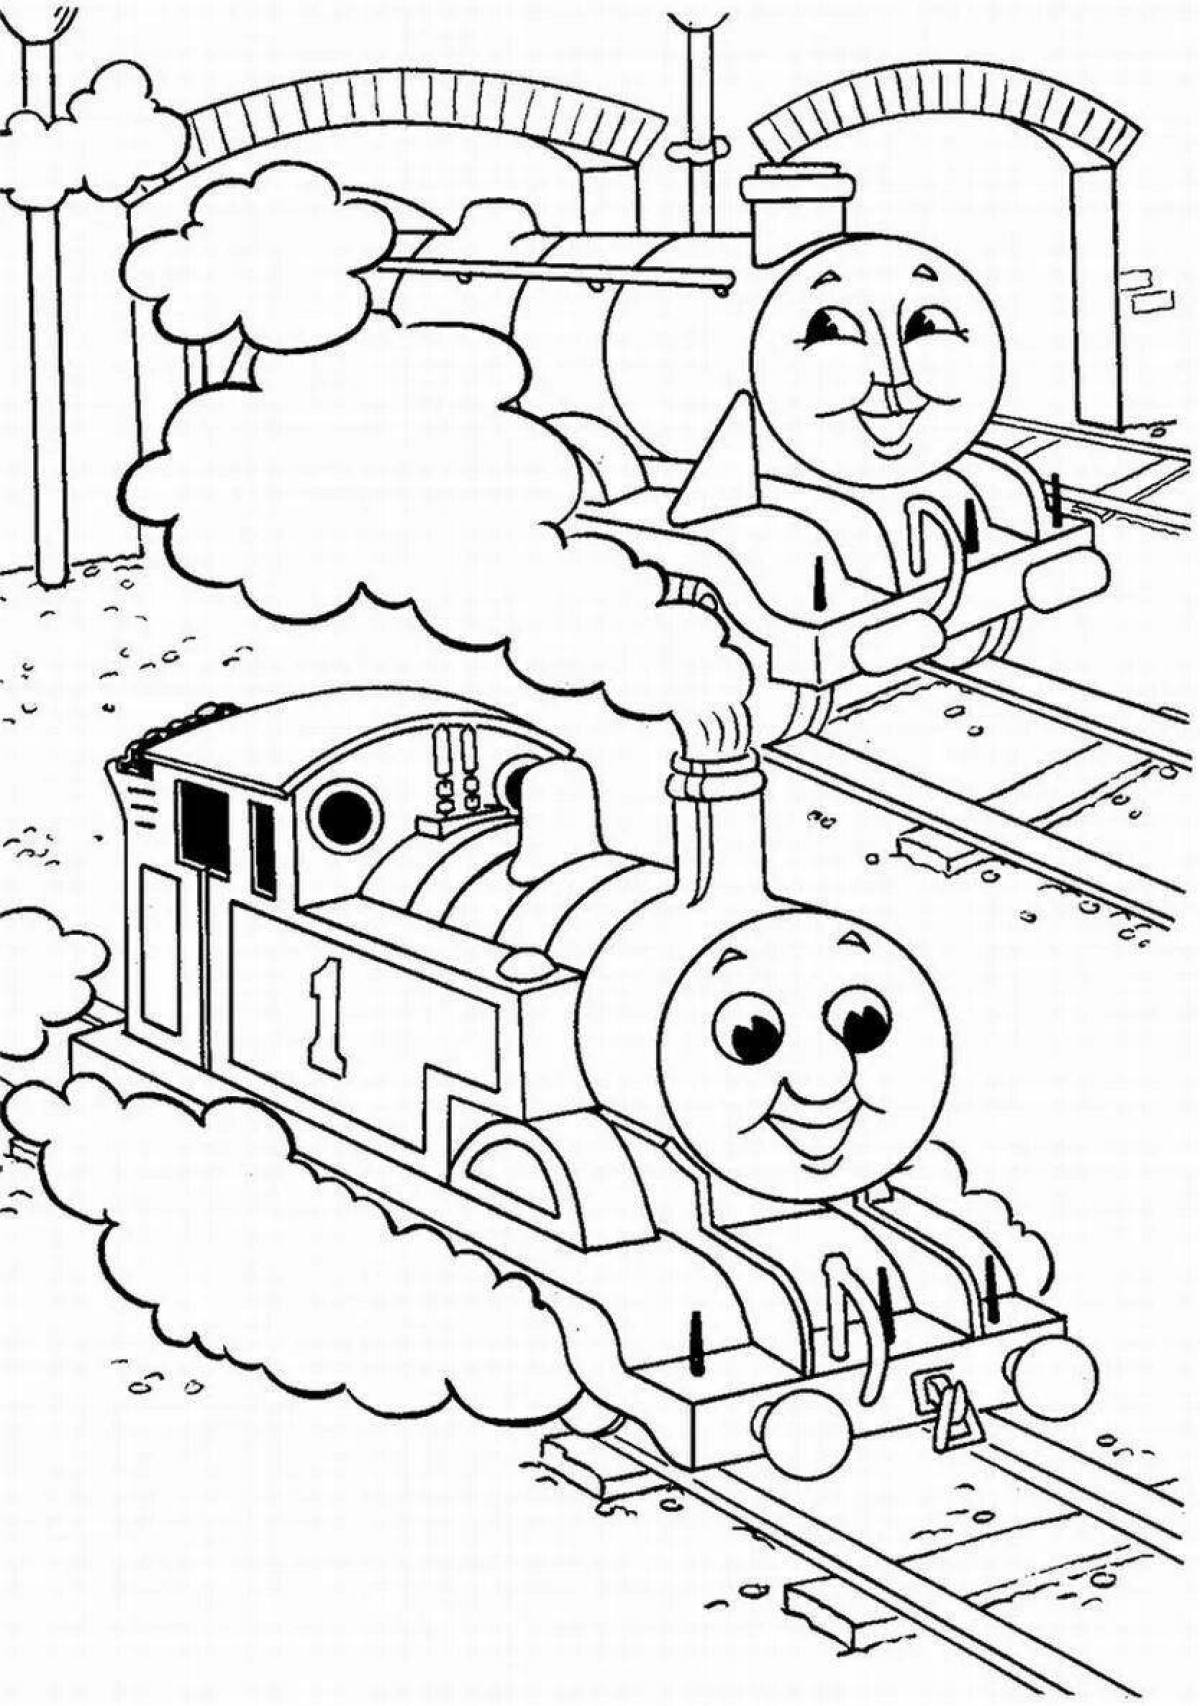 Thomas' train humorous coloring book